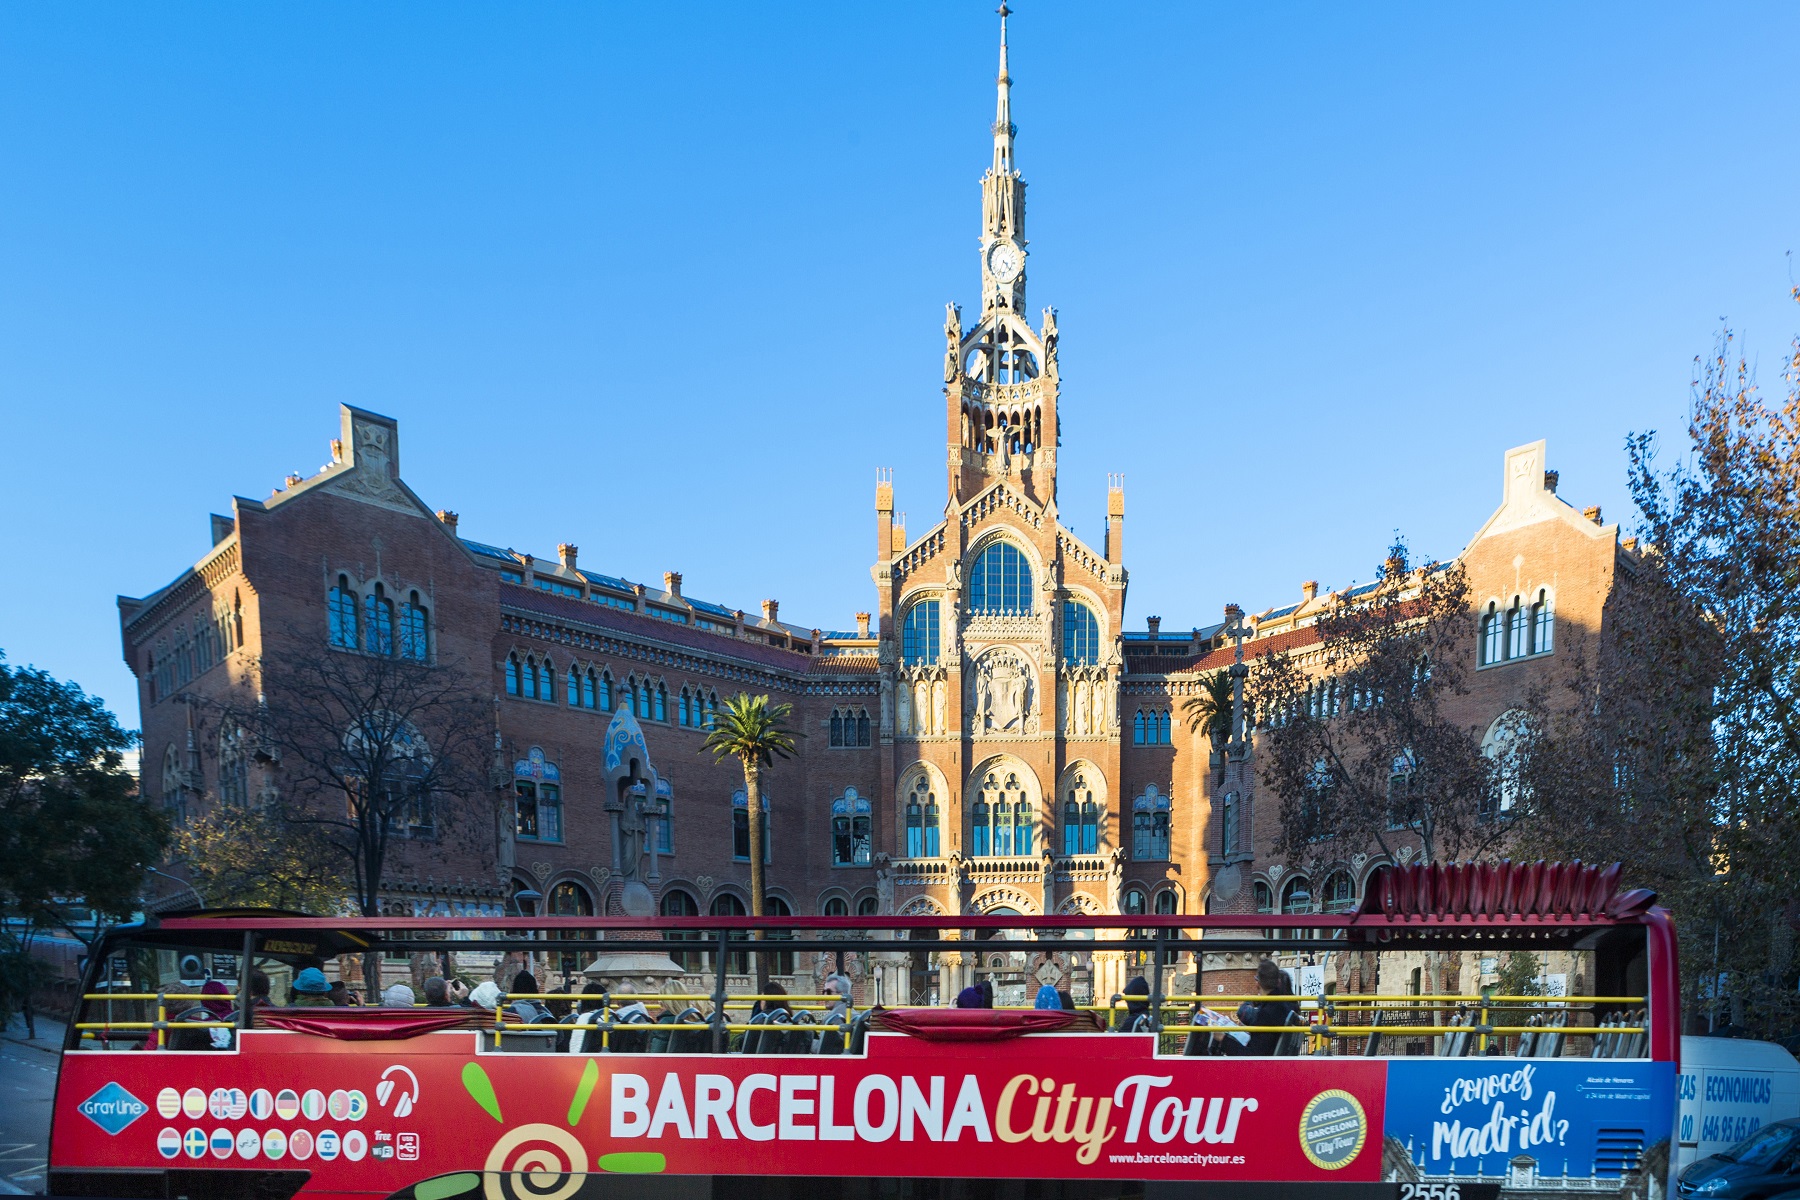 Barcelona City Tour Hop On Hop Off Bus Tour Julia Travel